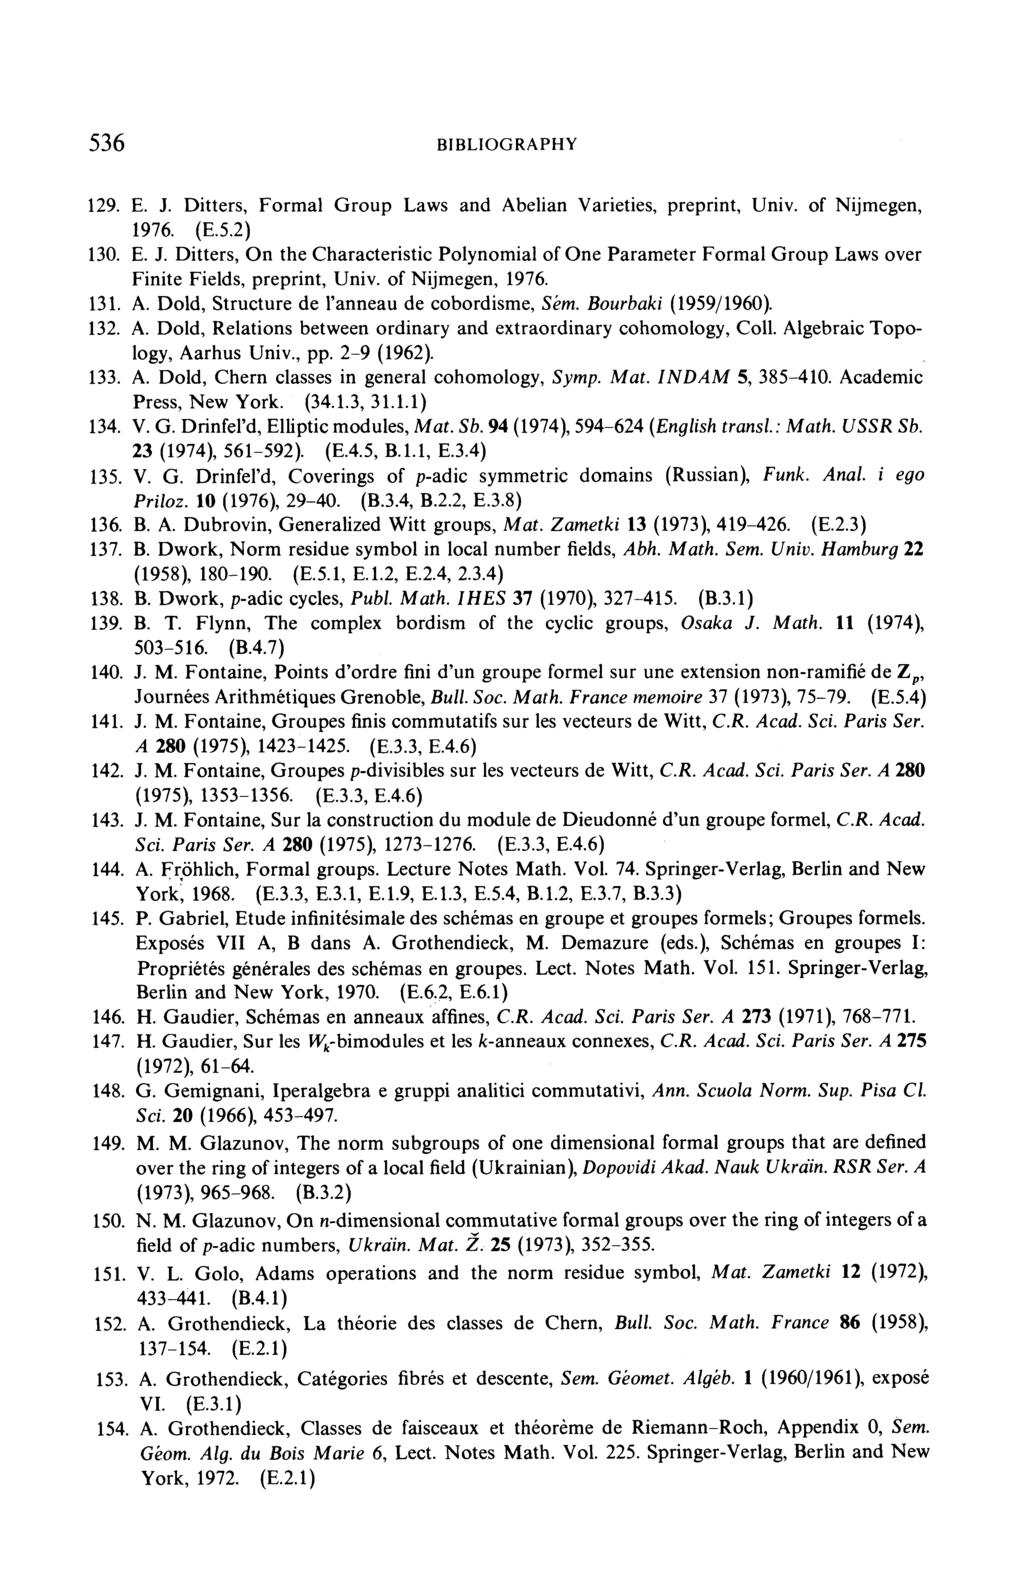 J. M. Fontaine, Points d ordre fini d un groupe formel sur une extension non-ramifié dez p, Journées Arithmétiques Grenoble, Bull. Soc. Math.